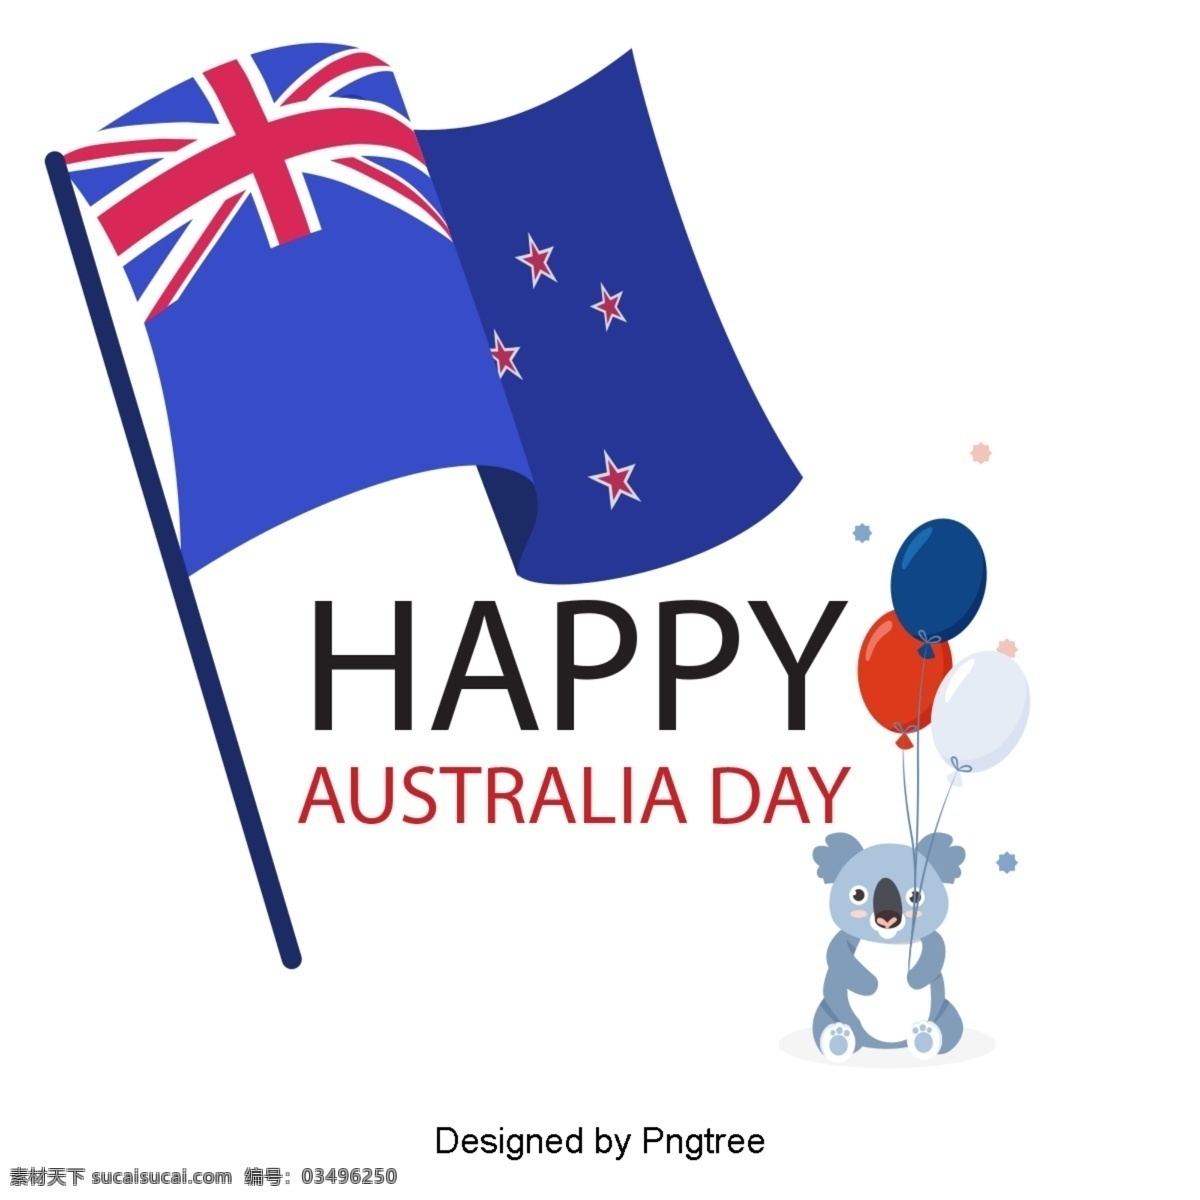 澳大利亚 国旗 蓝色 红色 星星 旗帜 考拉 爱心 爱国 字体 澳大利亚日